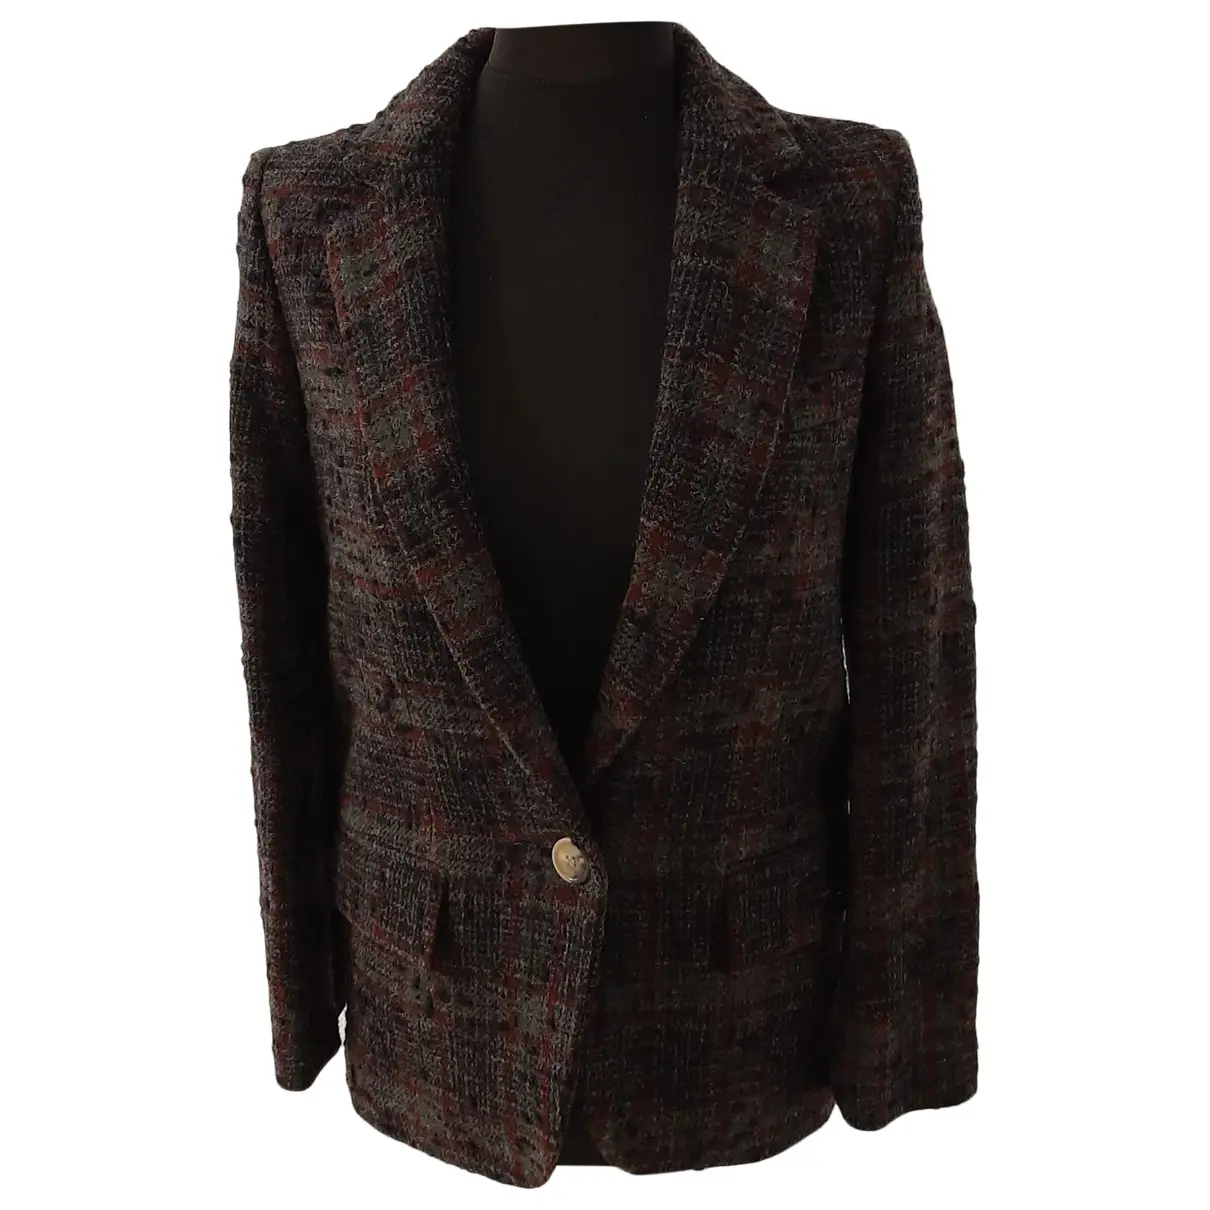 Wool jacket Isabel Marant Etoile